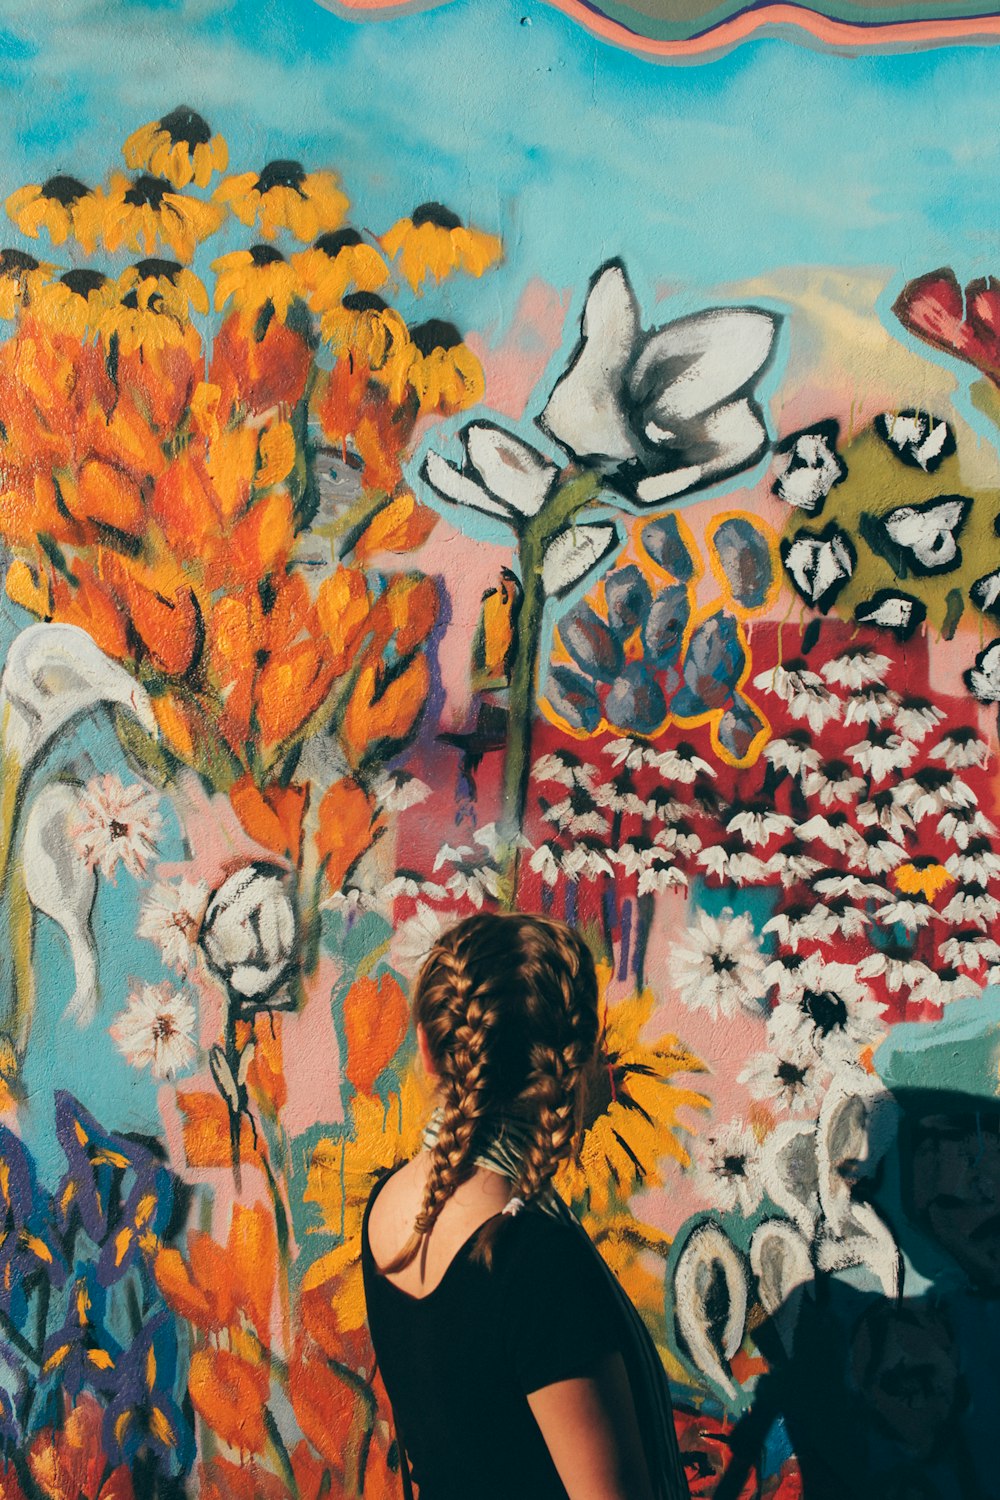 femme face devant le mur de graffiti floral